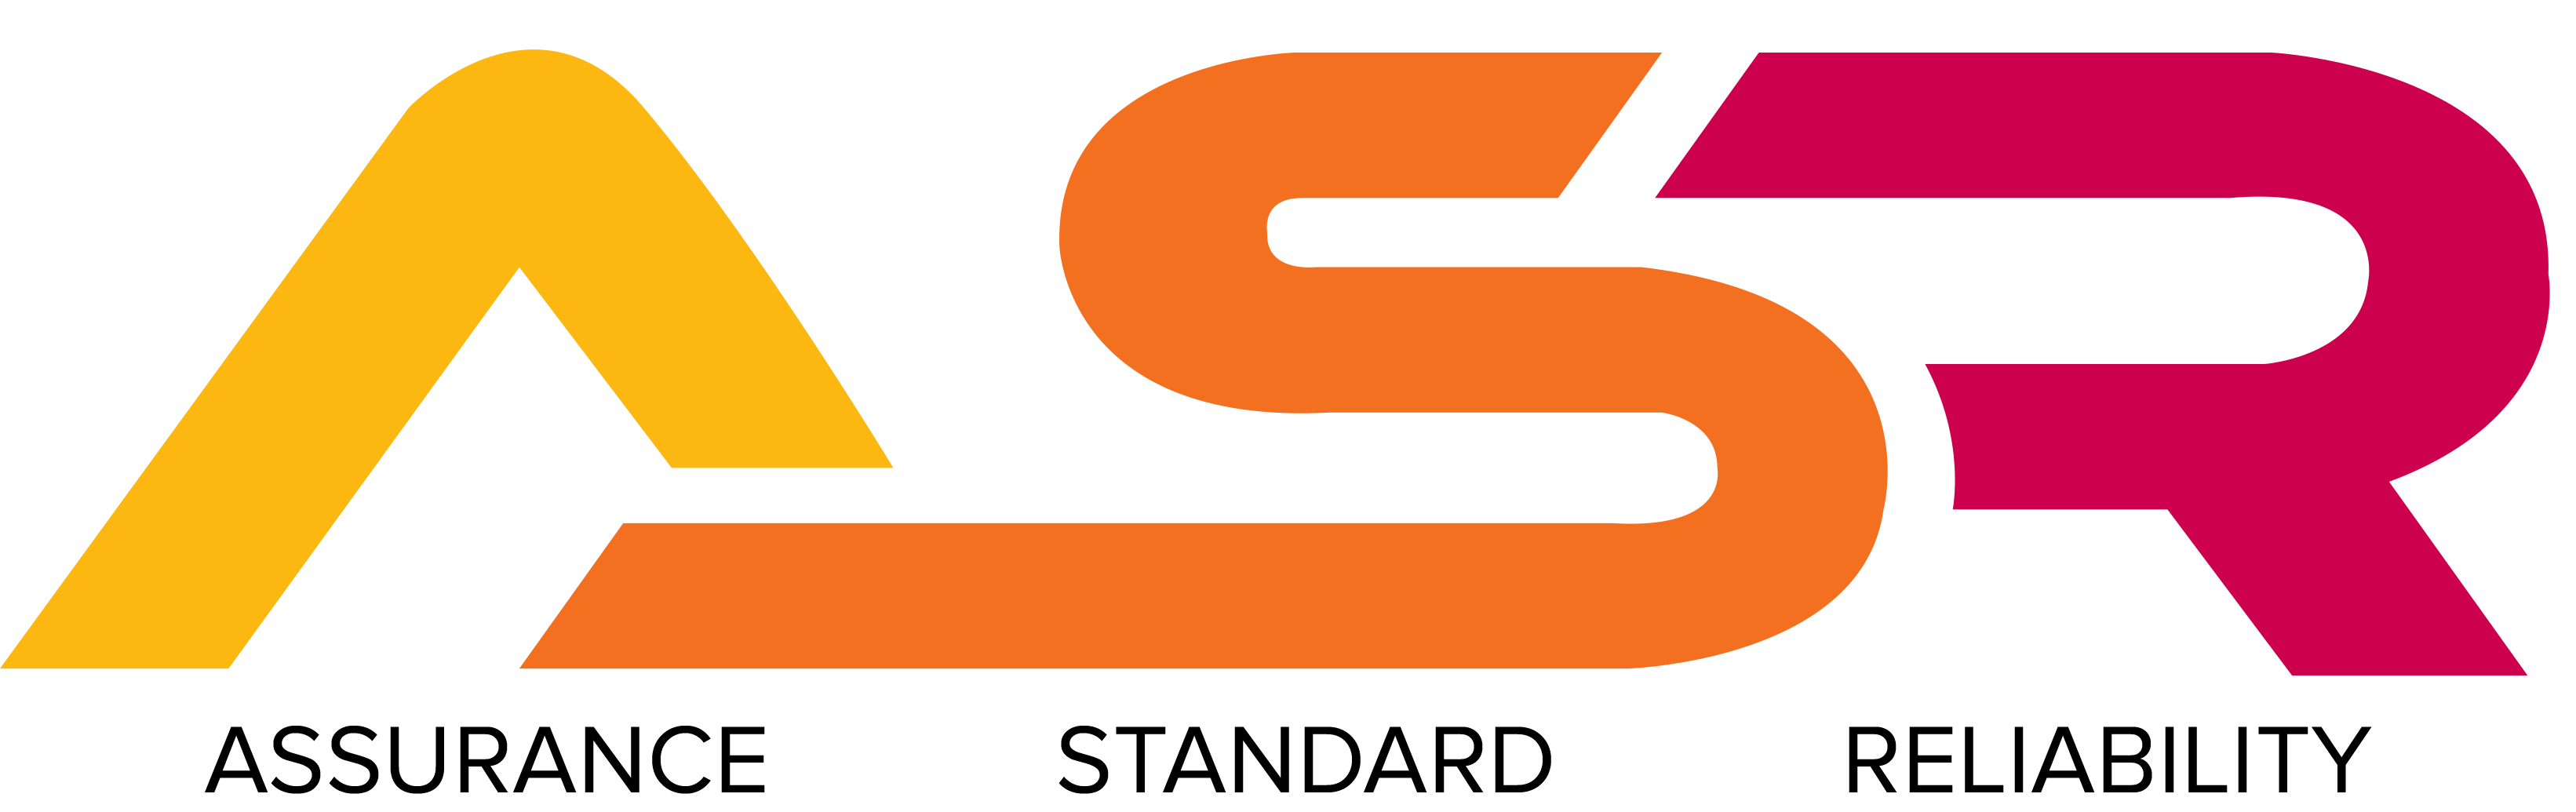 File:ASR Nederland logo.svg - Wikipedia